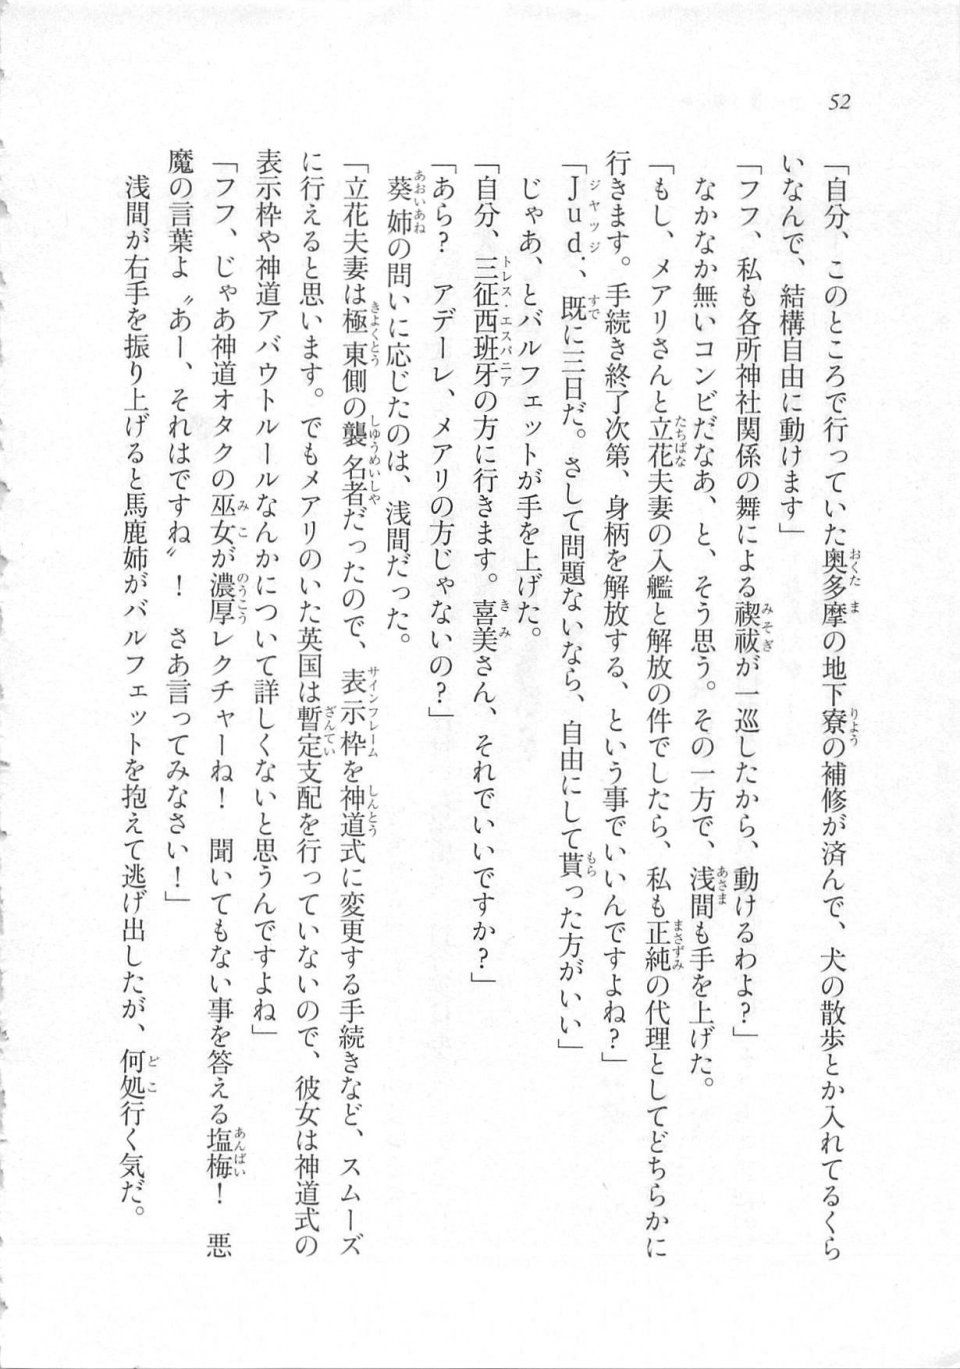 Kyoukai Senjou no Horizon LN Sidestory Vol 3 - Photo #56